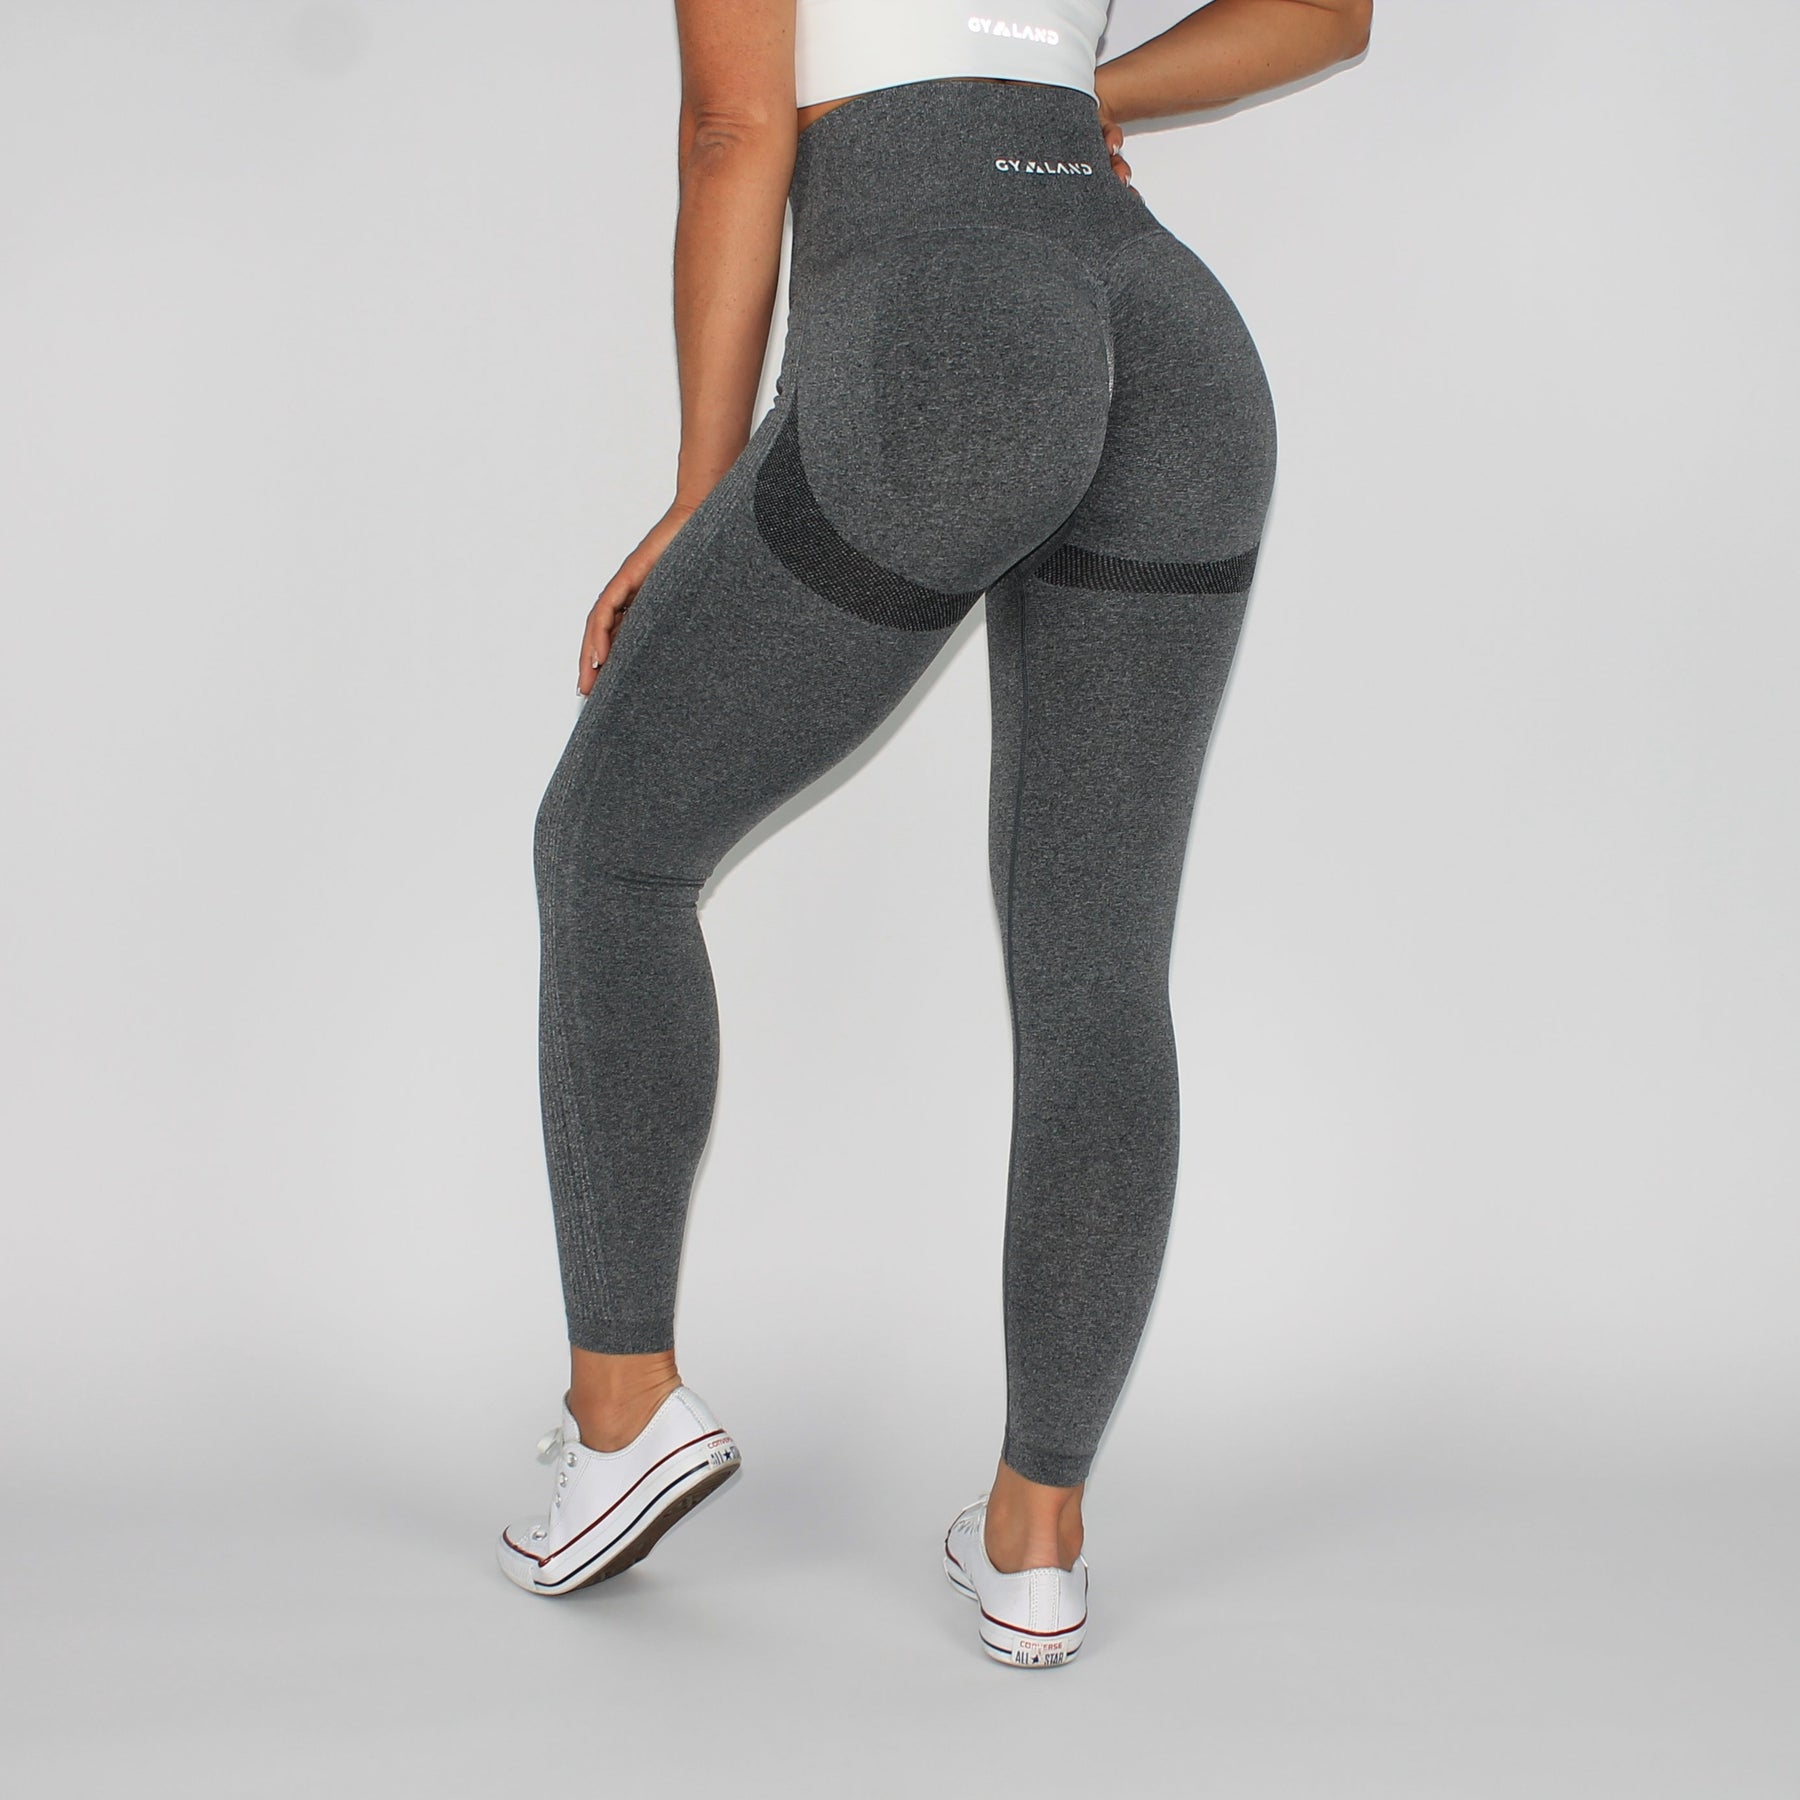 https://gymlandsportswear.com/cdn/shop/products/booty-goals-scrunch-bum-seamless-leggings-grey-back_1800x1800.jpg?v=1624254708